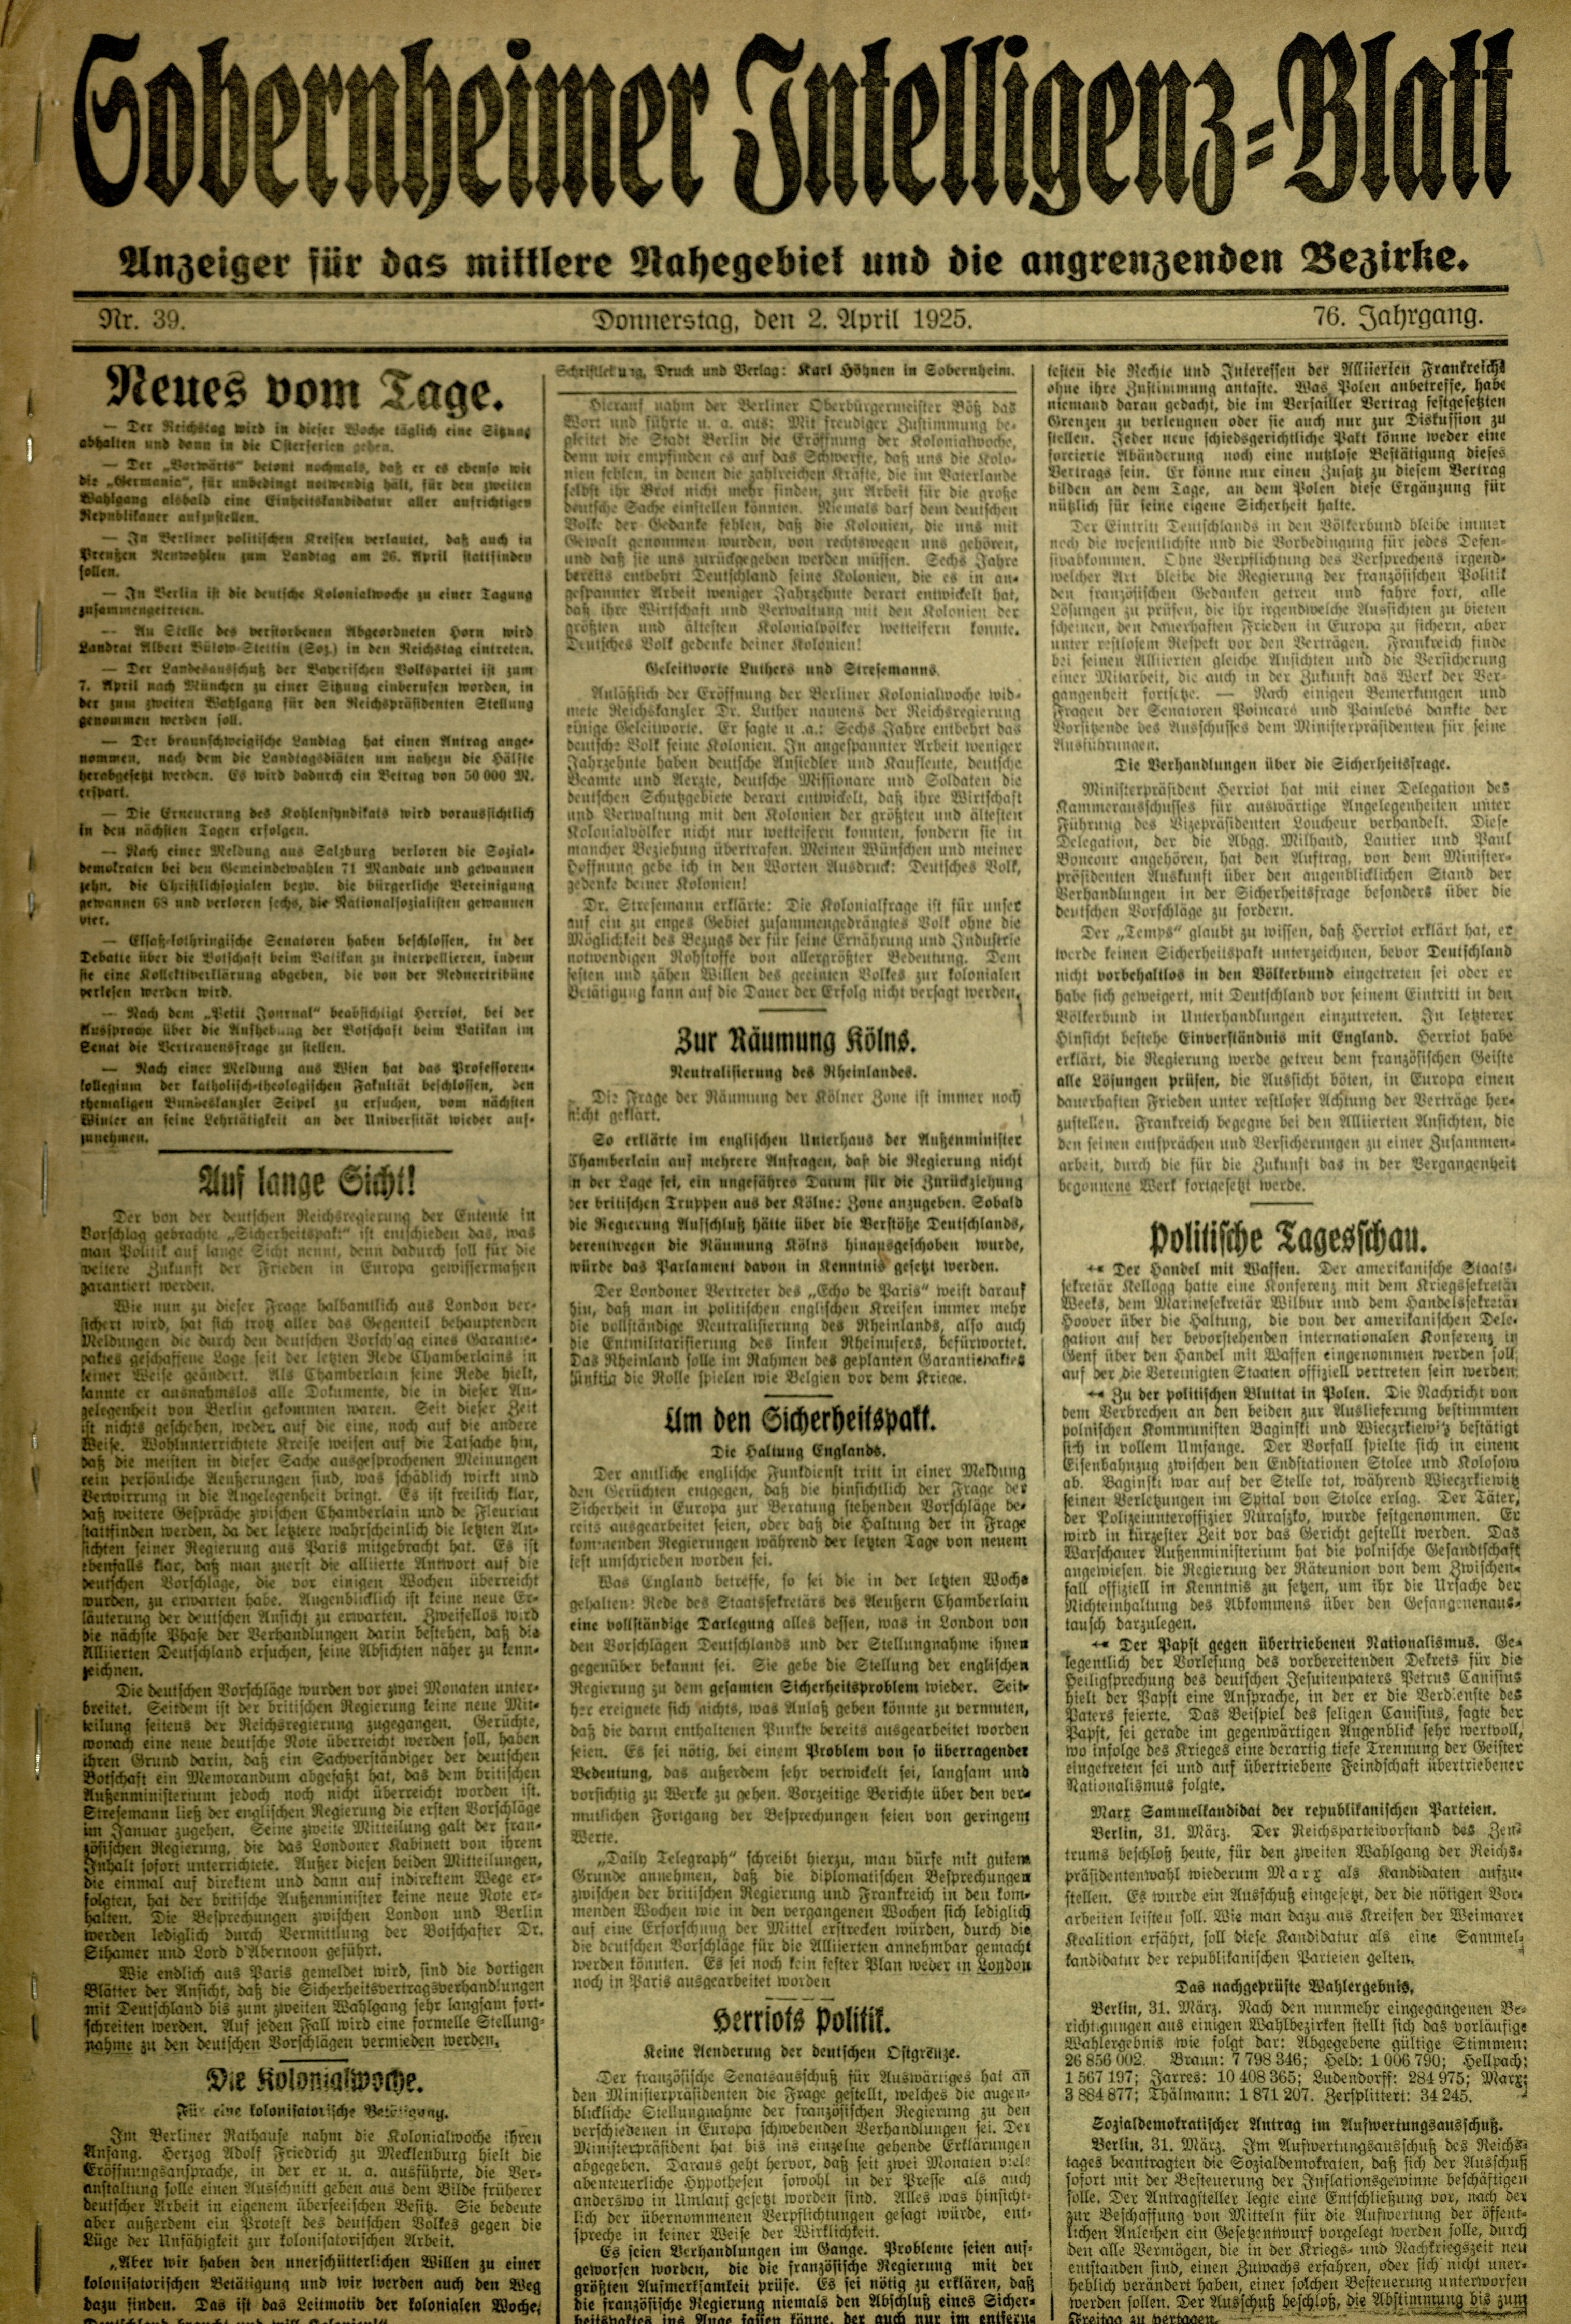 Zeitung: Sobernheimer Intelligenzblatt; April 1924, Jg. 73 Nr. 389 (Heimatmuseum Bad Sobernheim CC BY-NC-SA)